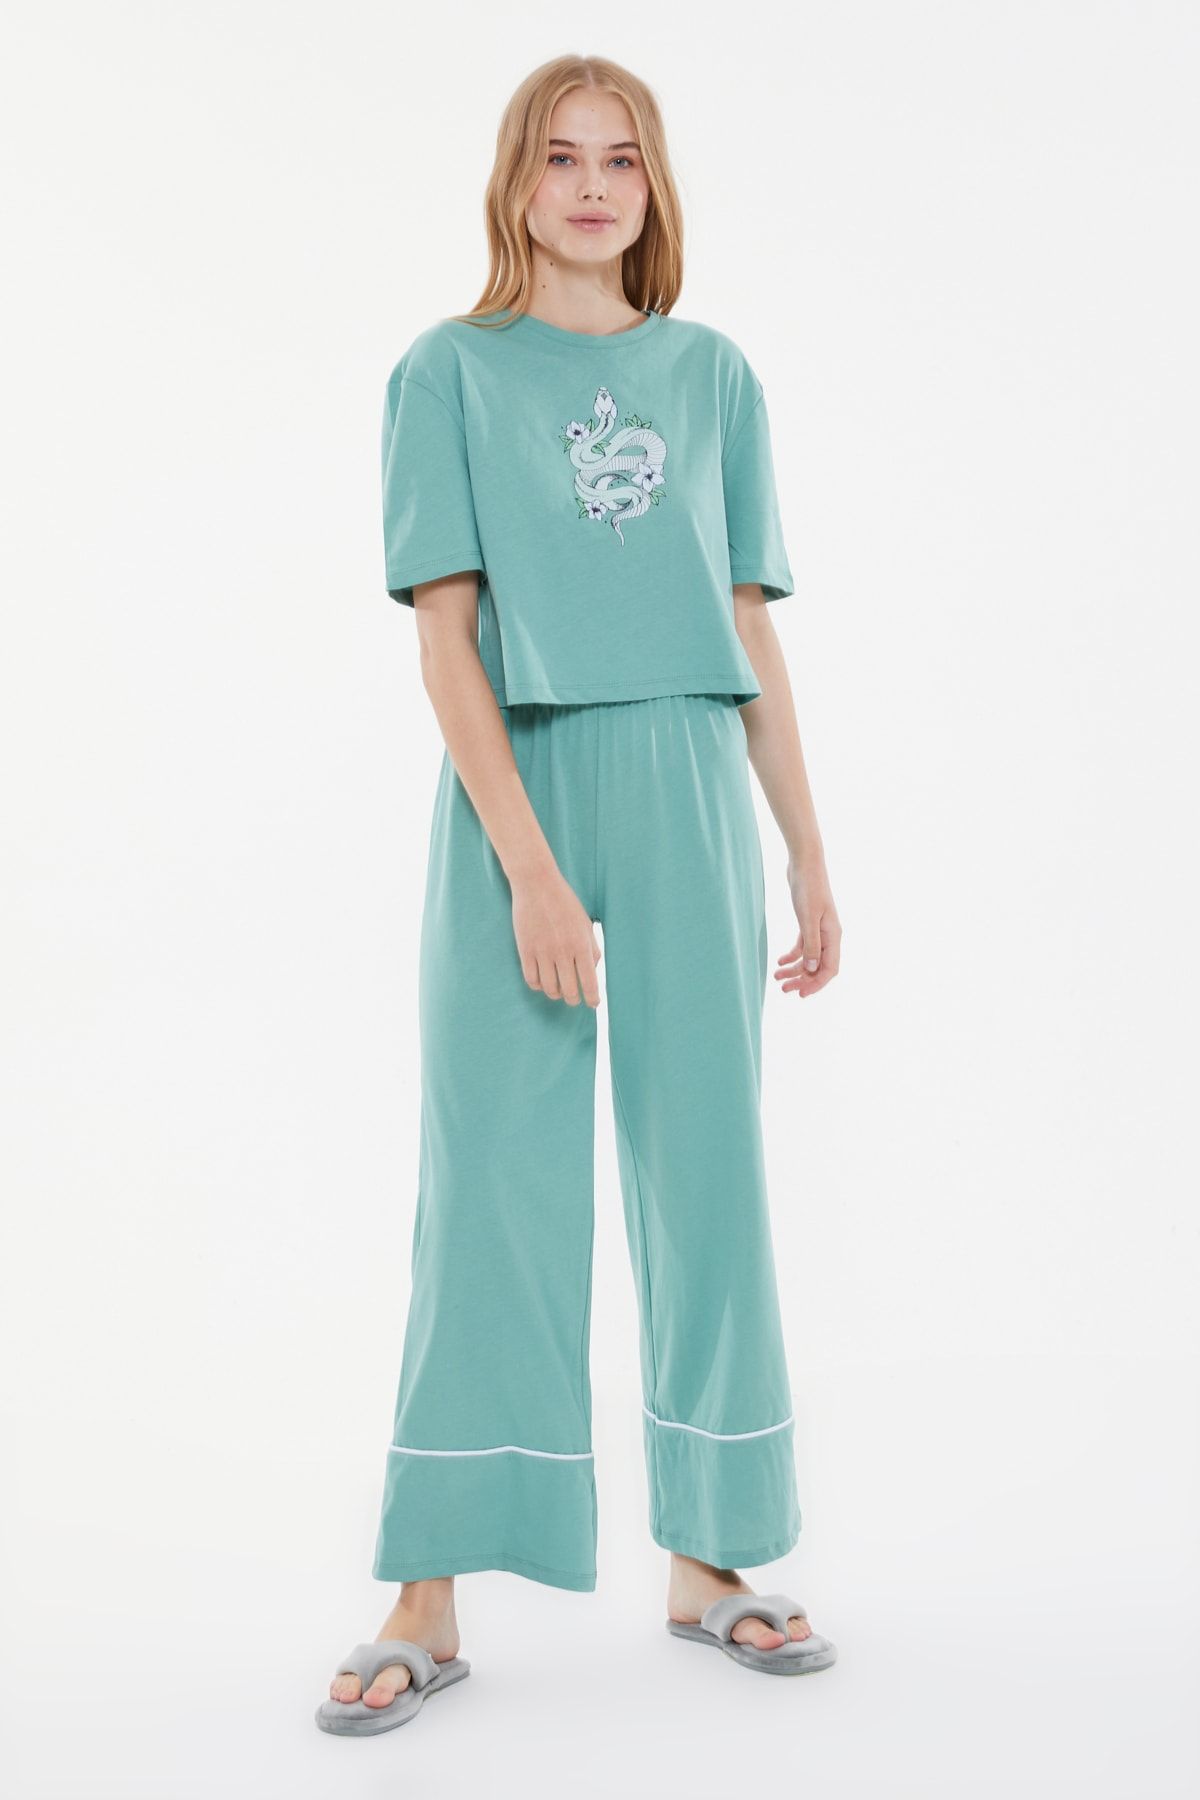 TRENDYOLMİLLA Yeşil Baskılı Örme Pijama Takımı THMSS21PT0953